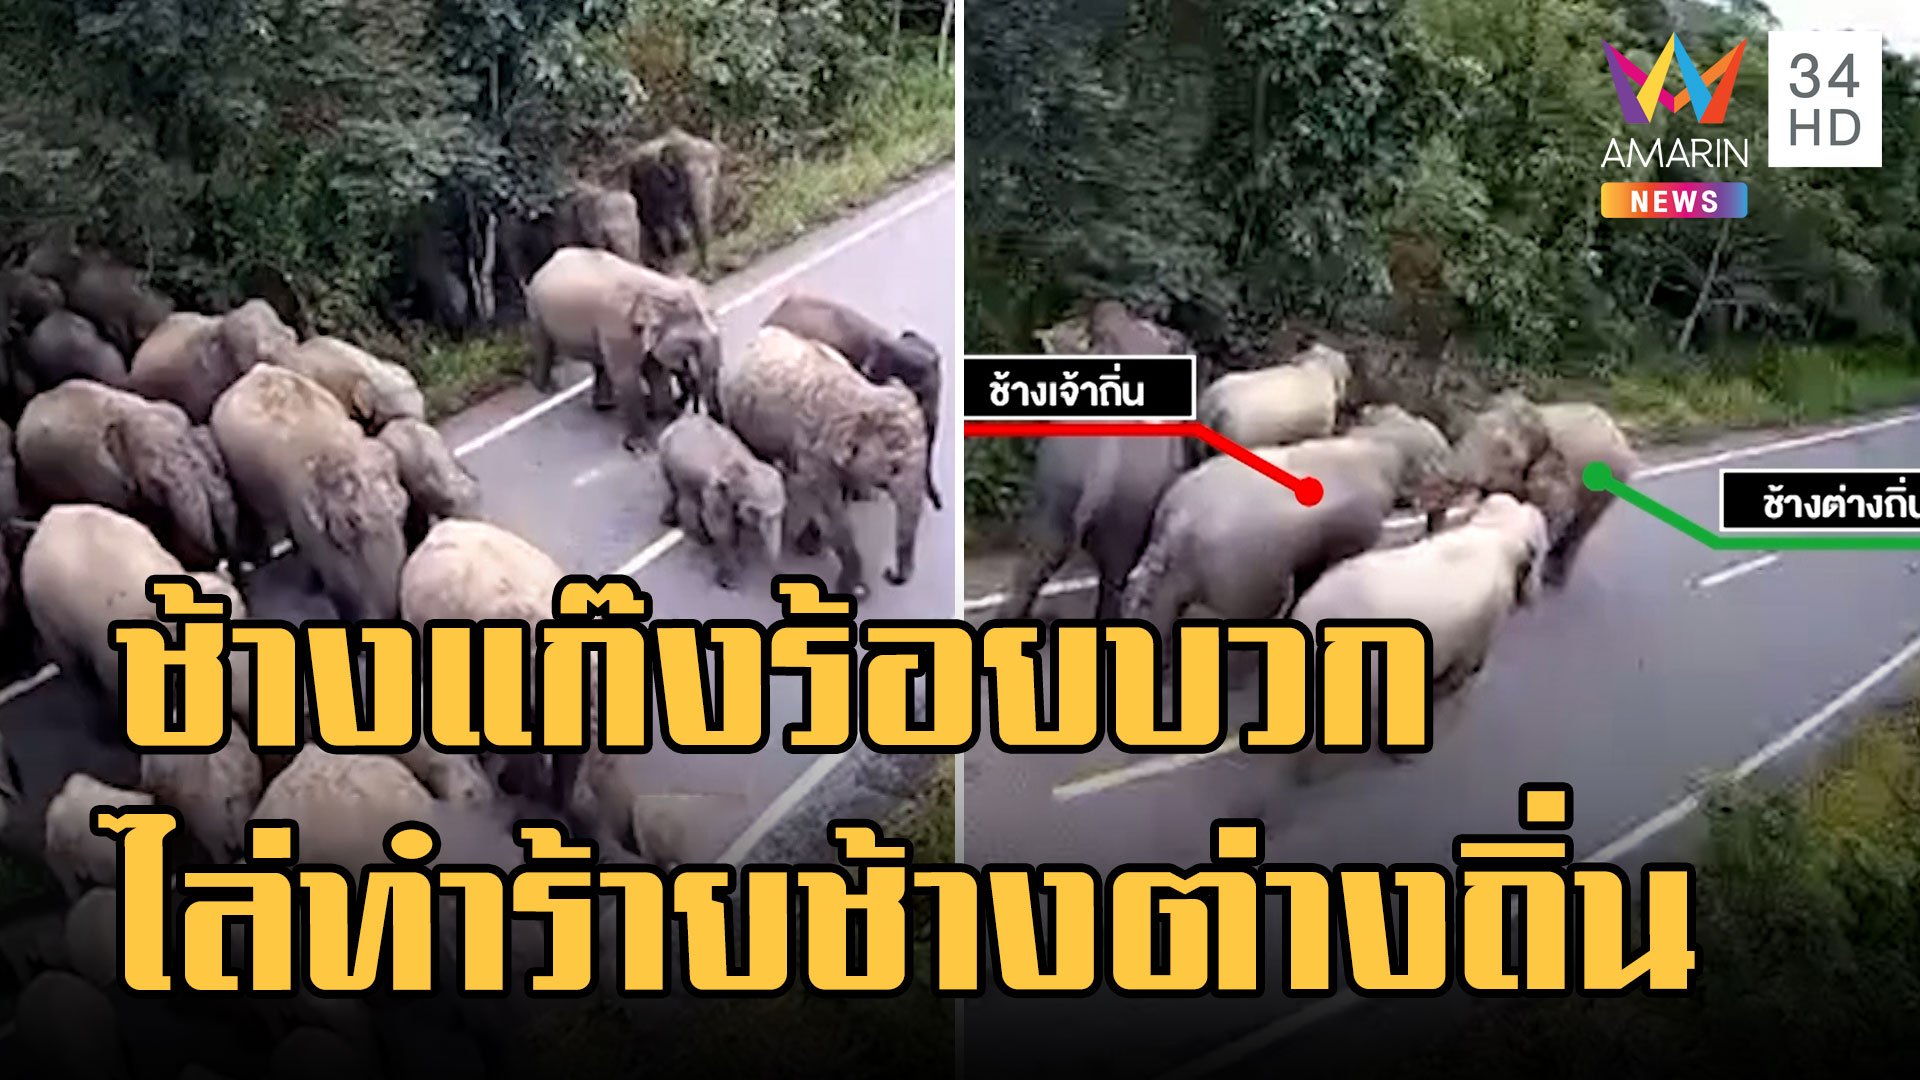 ใหญ่ชนใหญ่! ช้างป่าพลัดถิ่นถูกช้างป่าเจ้าถิ่นไล่ทำร้าย | ข่าวเที่ยงอมรินทร์ | 29 ก.ย. 65 | AMARIN TVHD34